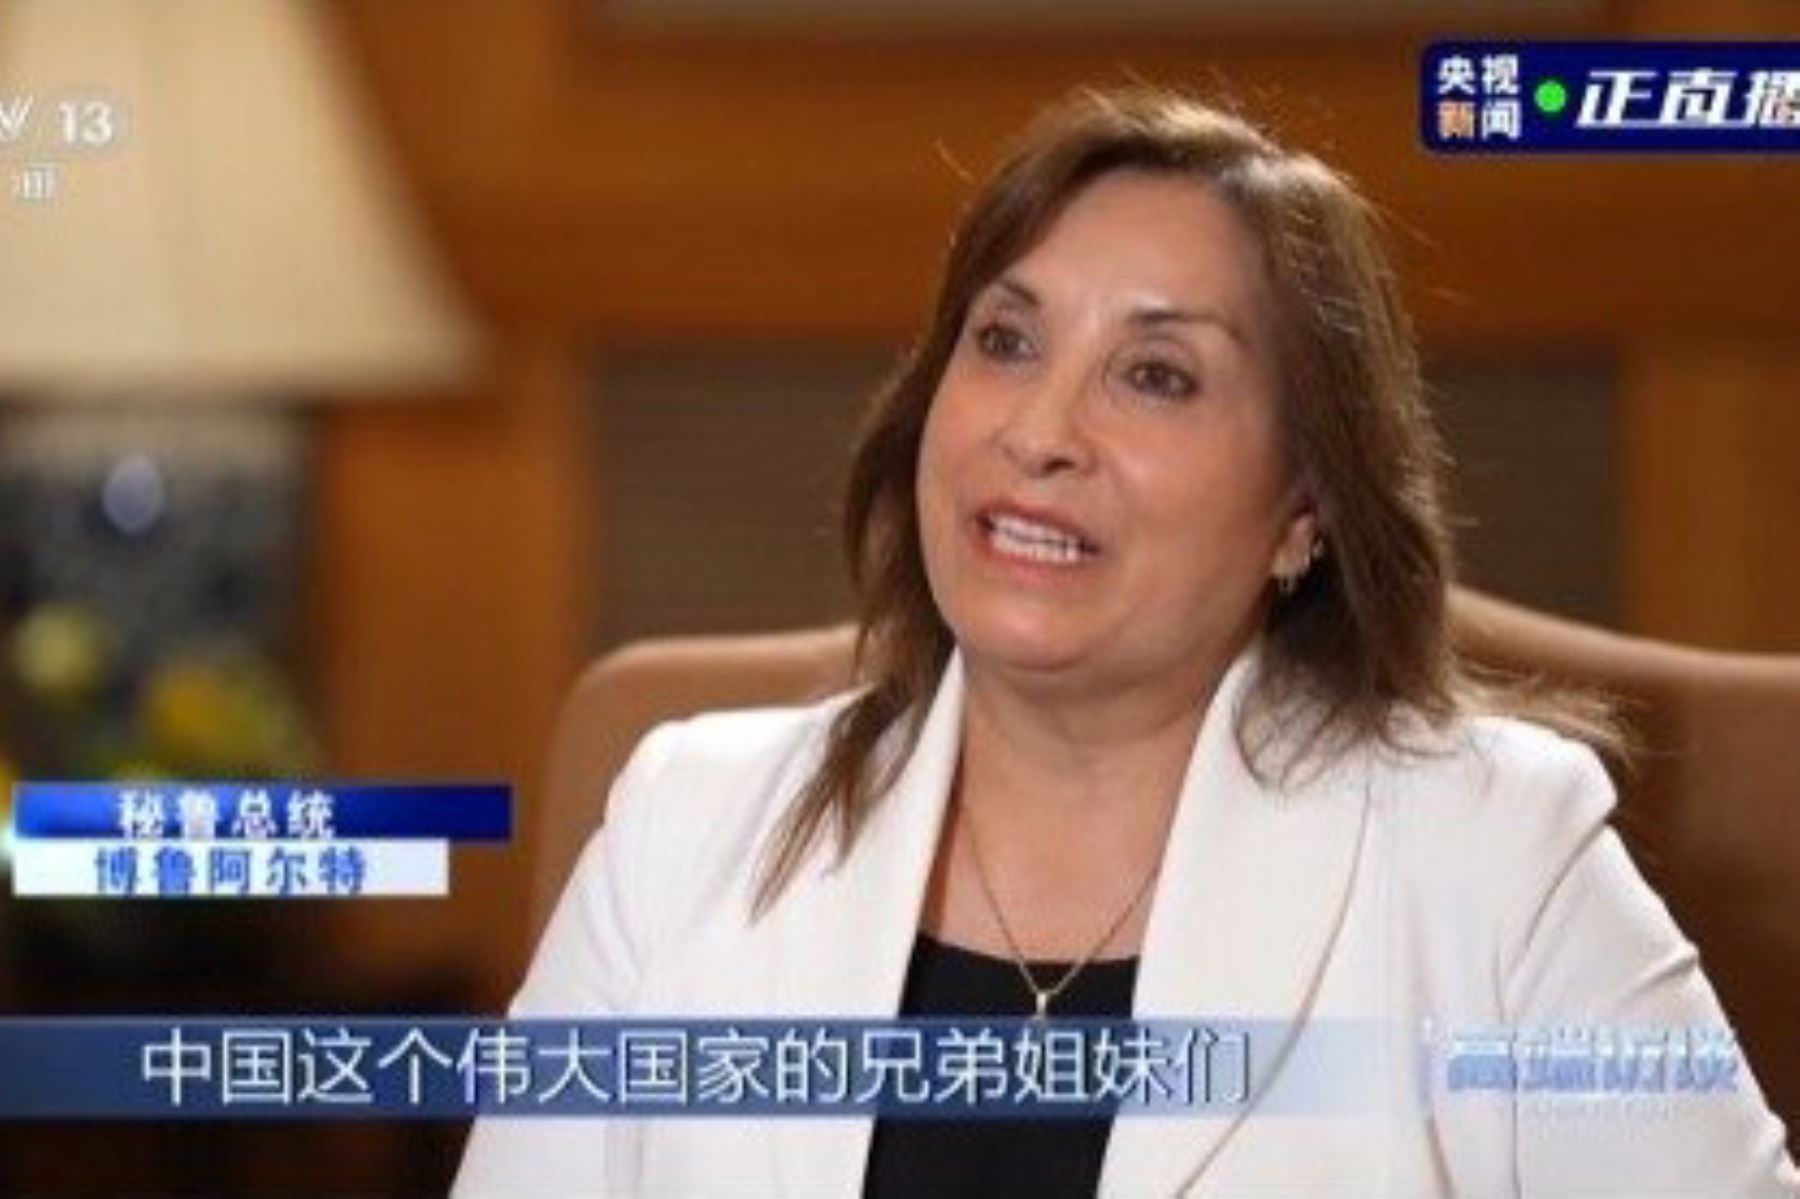 La presidenta Dina Boluarte fue entrevistada por el canal de TV chino CCTV. ANDINA/Difusión